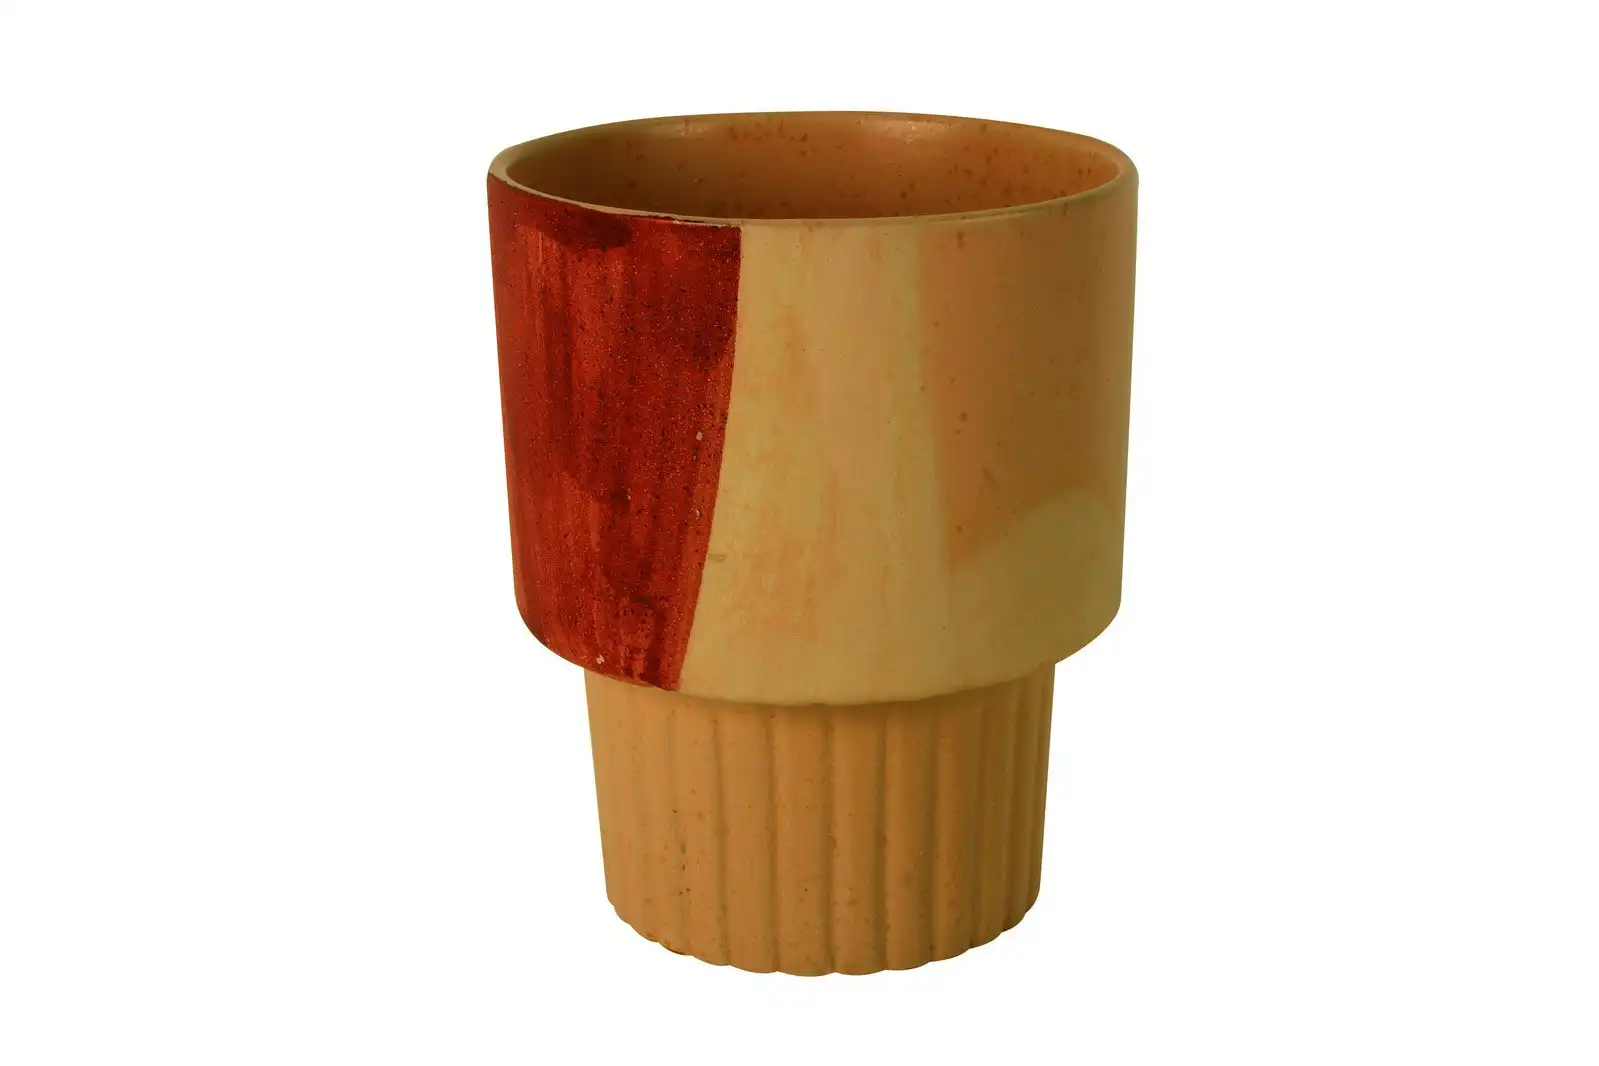 Maine & Crawford 18x15cm Camila Ceramic Flower Vase/Pot Hand Painted Rustic